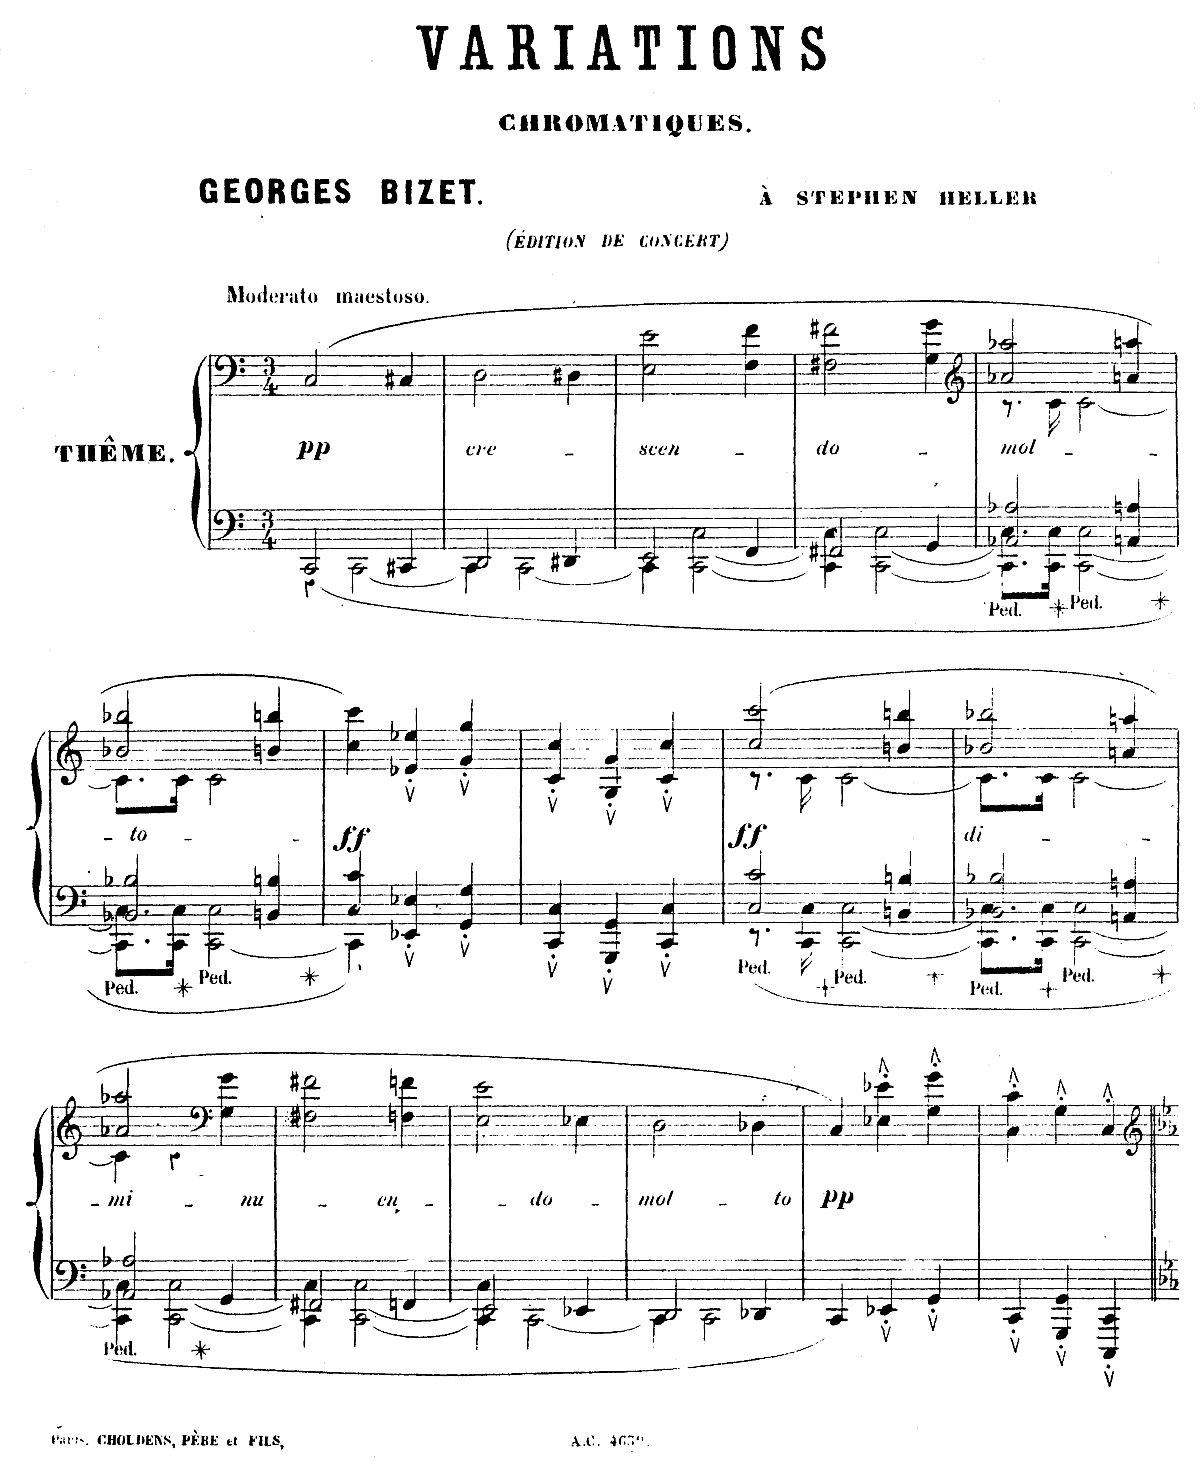 Georges Bizet, Variations Chromatiques, Première page de la partition Ed. Paris: Choudens Fils, n.d. Plate A.C. 4639, IMSLP, cliquer pour une vue agrandie